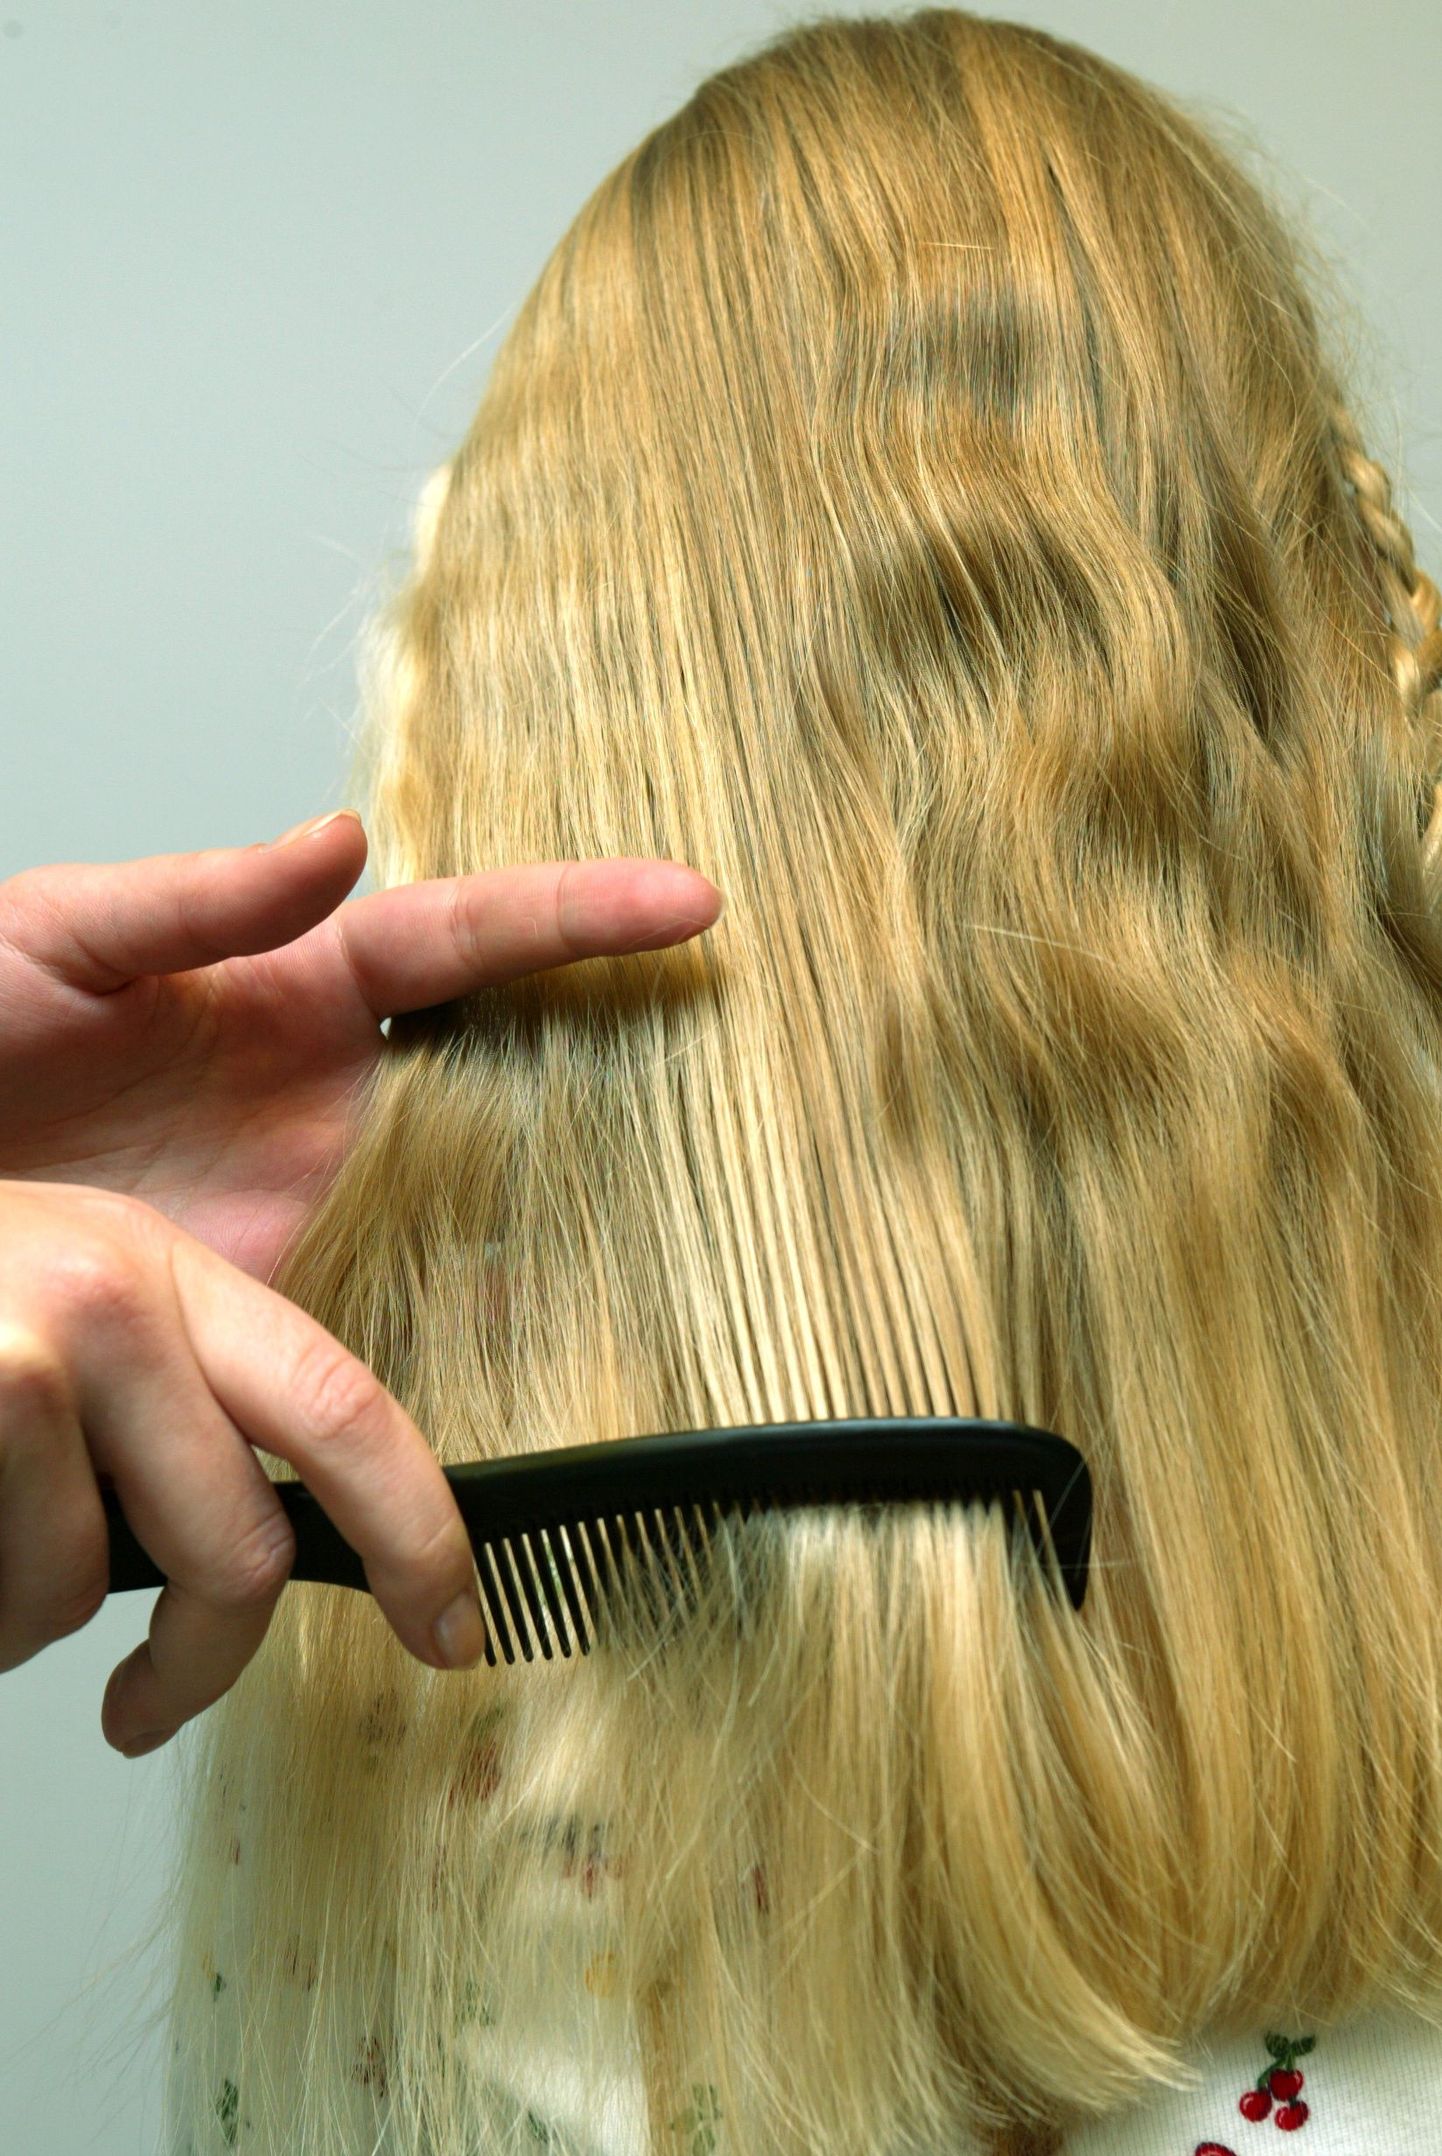 Благодаря регулярным стрижкам волосы выглядят более ухоженными и здоровыми.